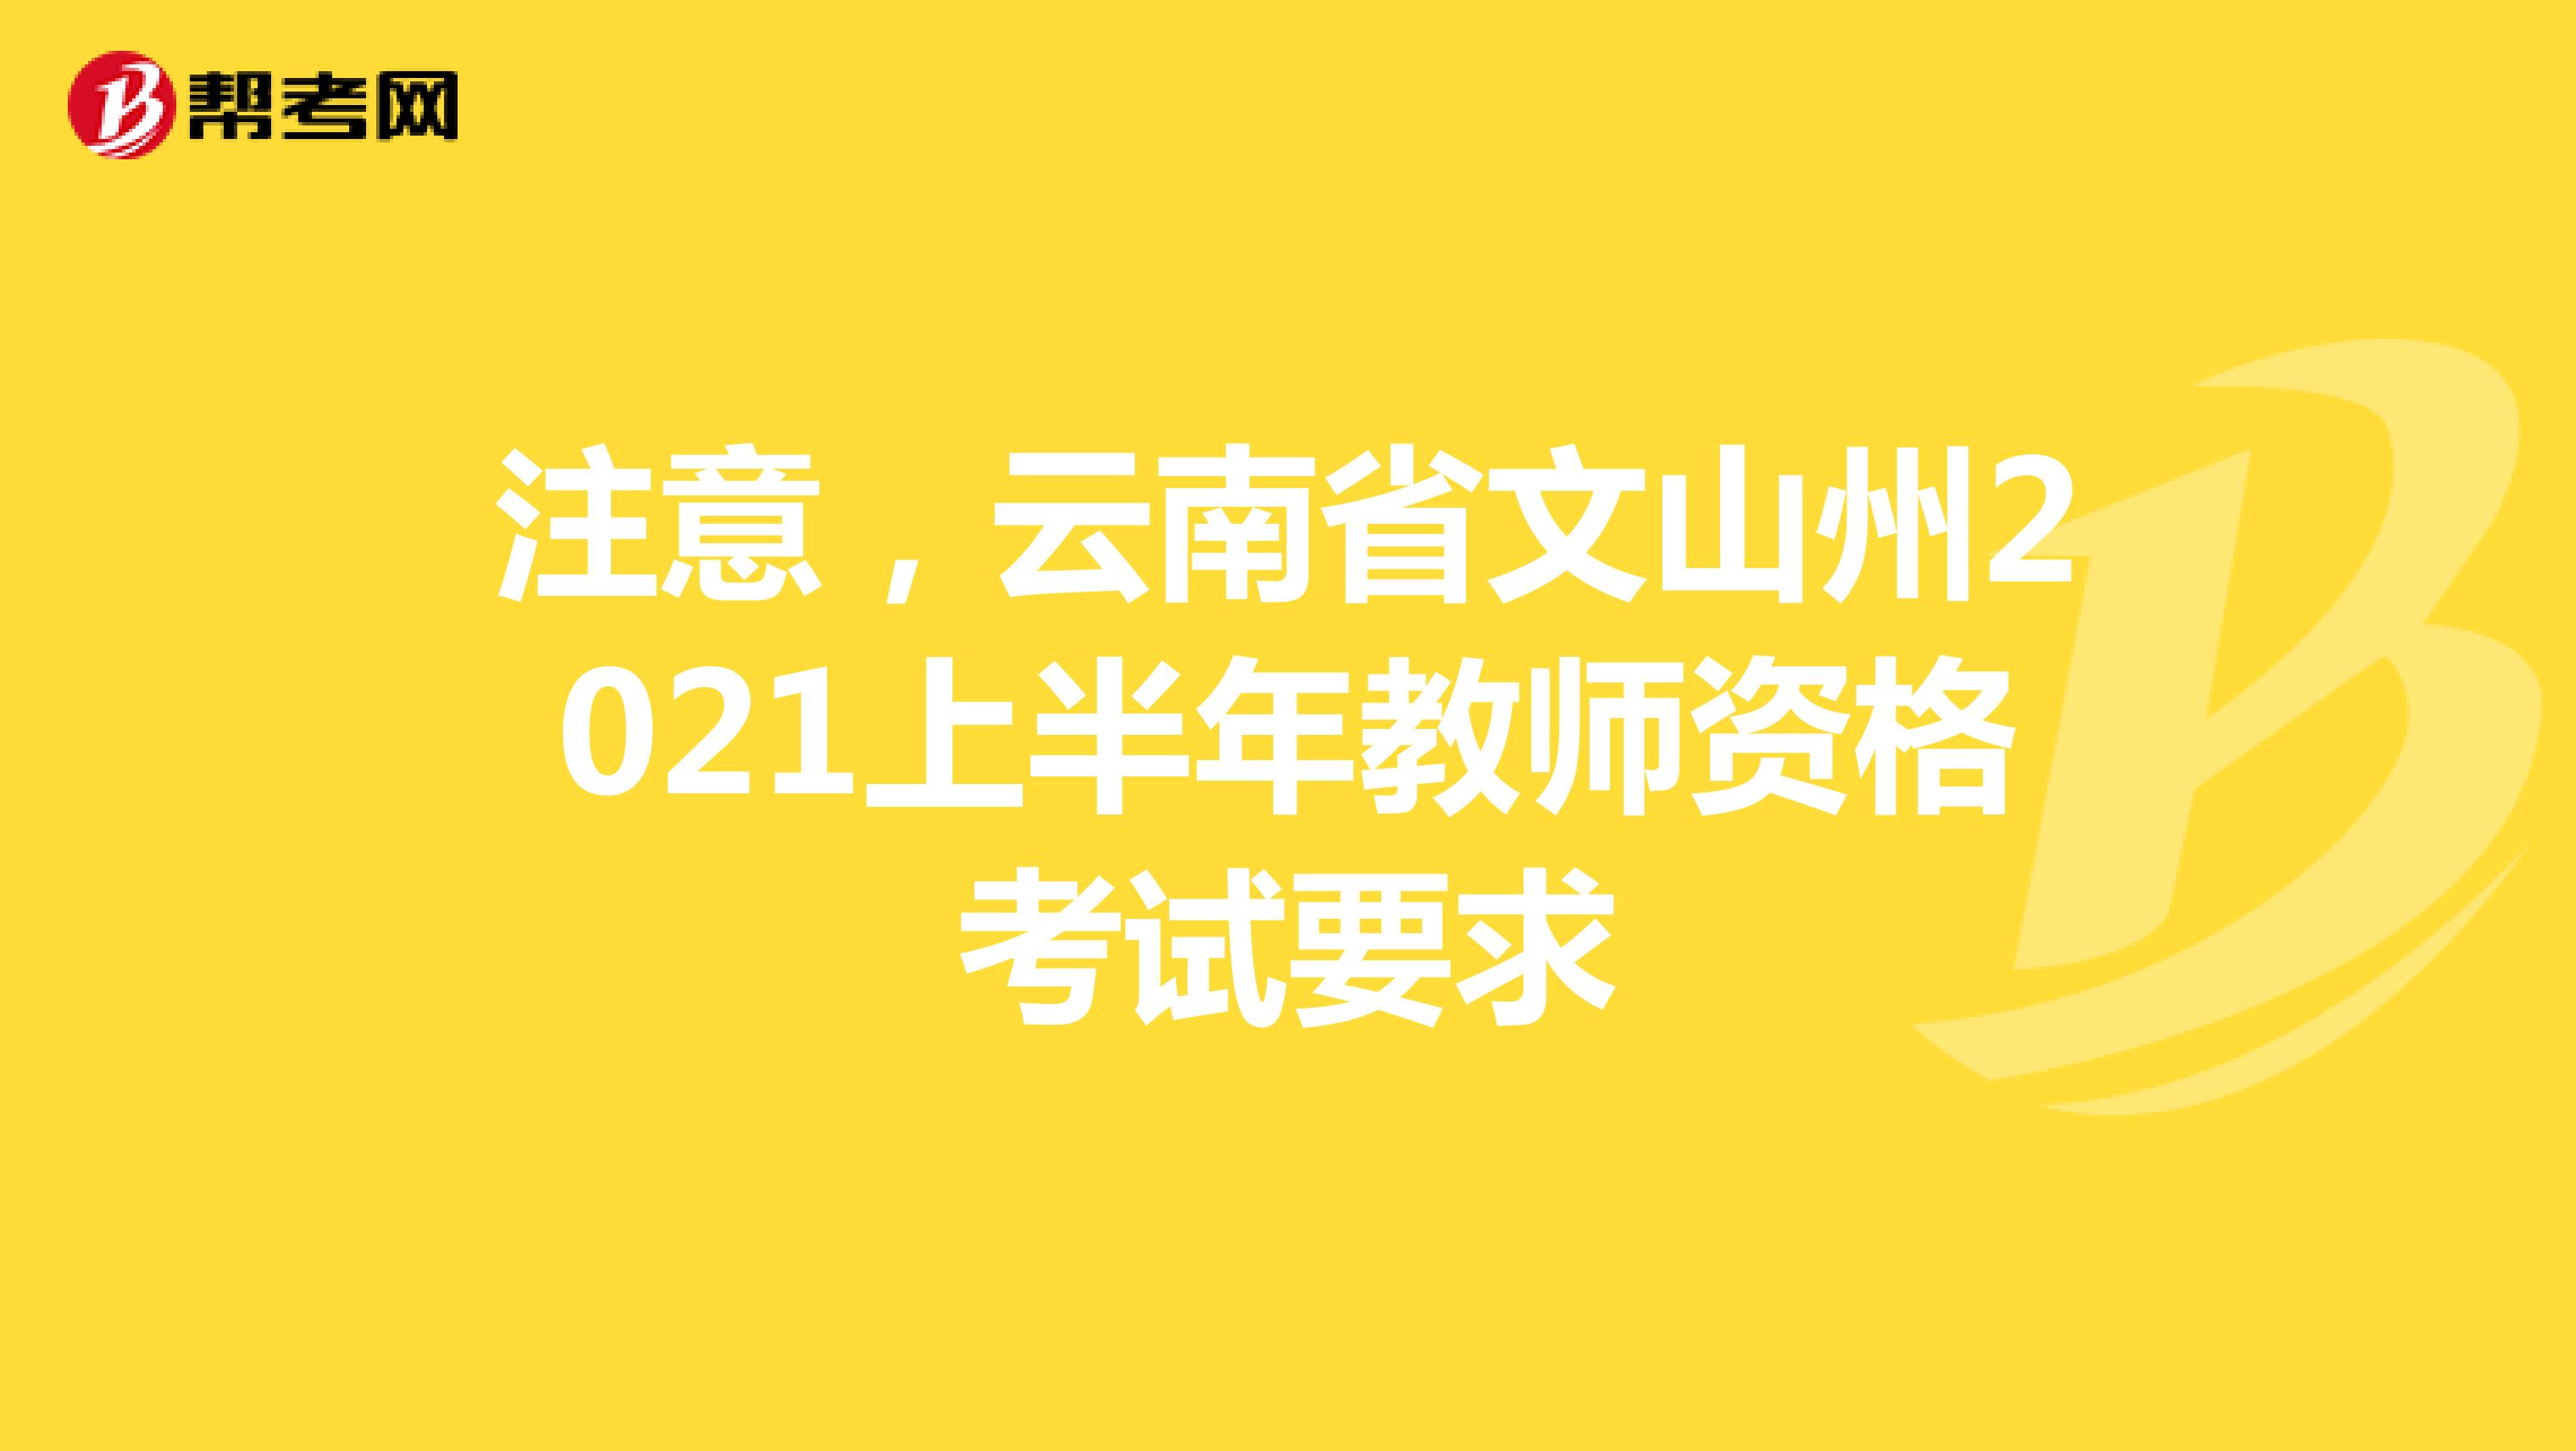 注意，云南省文山州2021上半年教师资格考试要求